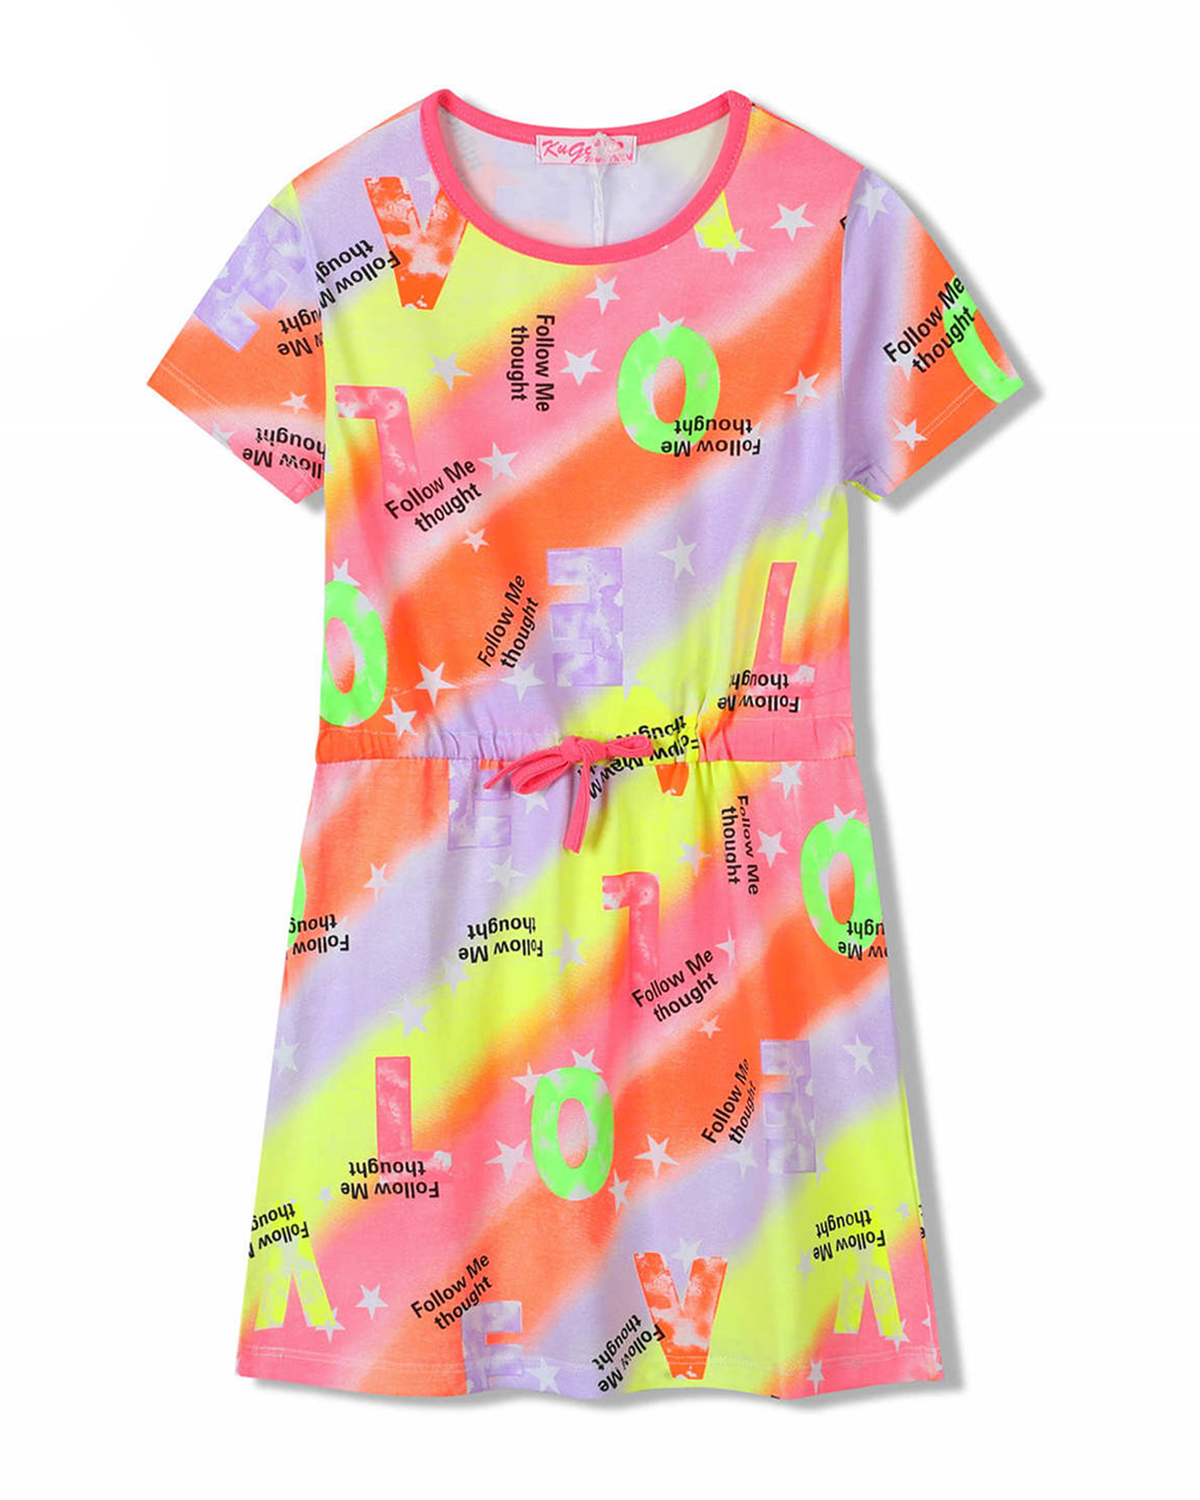 Dívčí šaty - KUGO SH3518, mix barev / růžový lem Barva: Mix barev, Velikost: 134